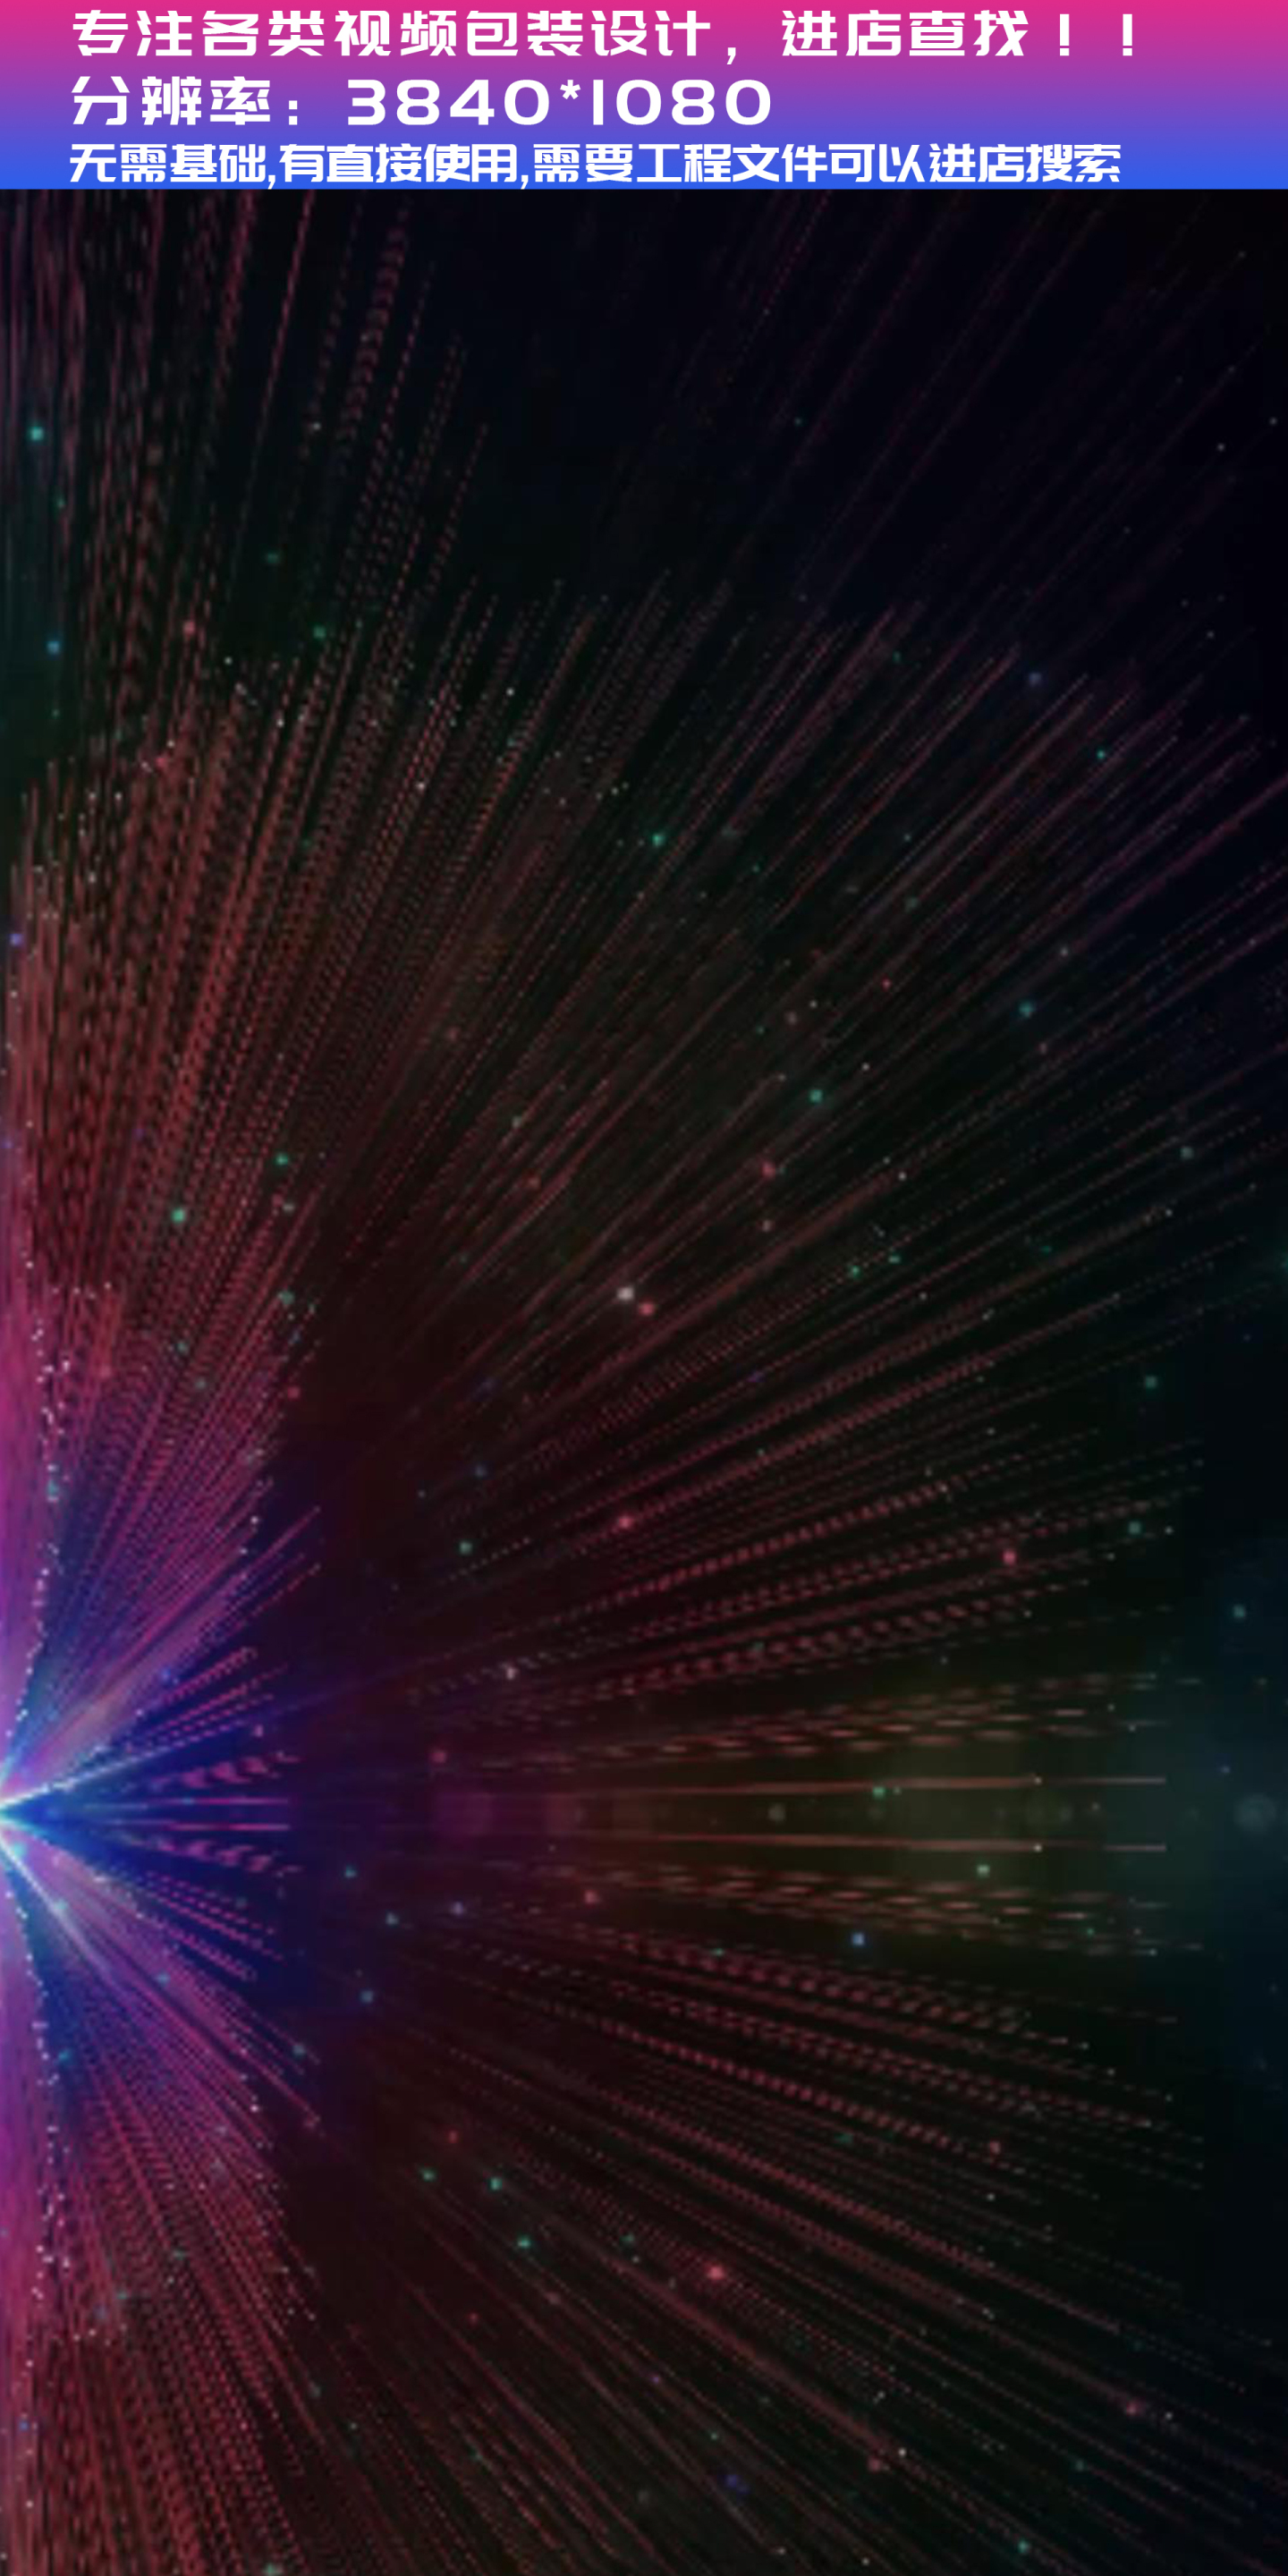 【视频】孔雀舞粒子光线元素光束舞台